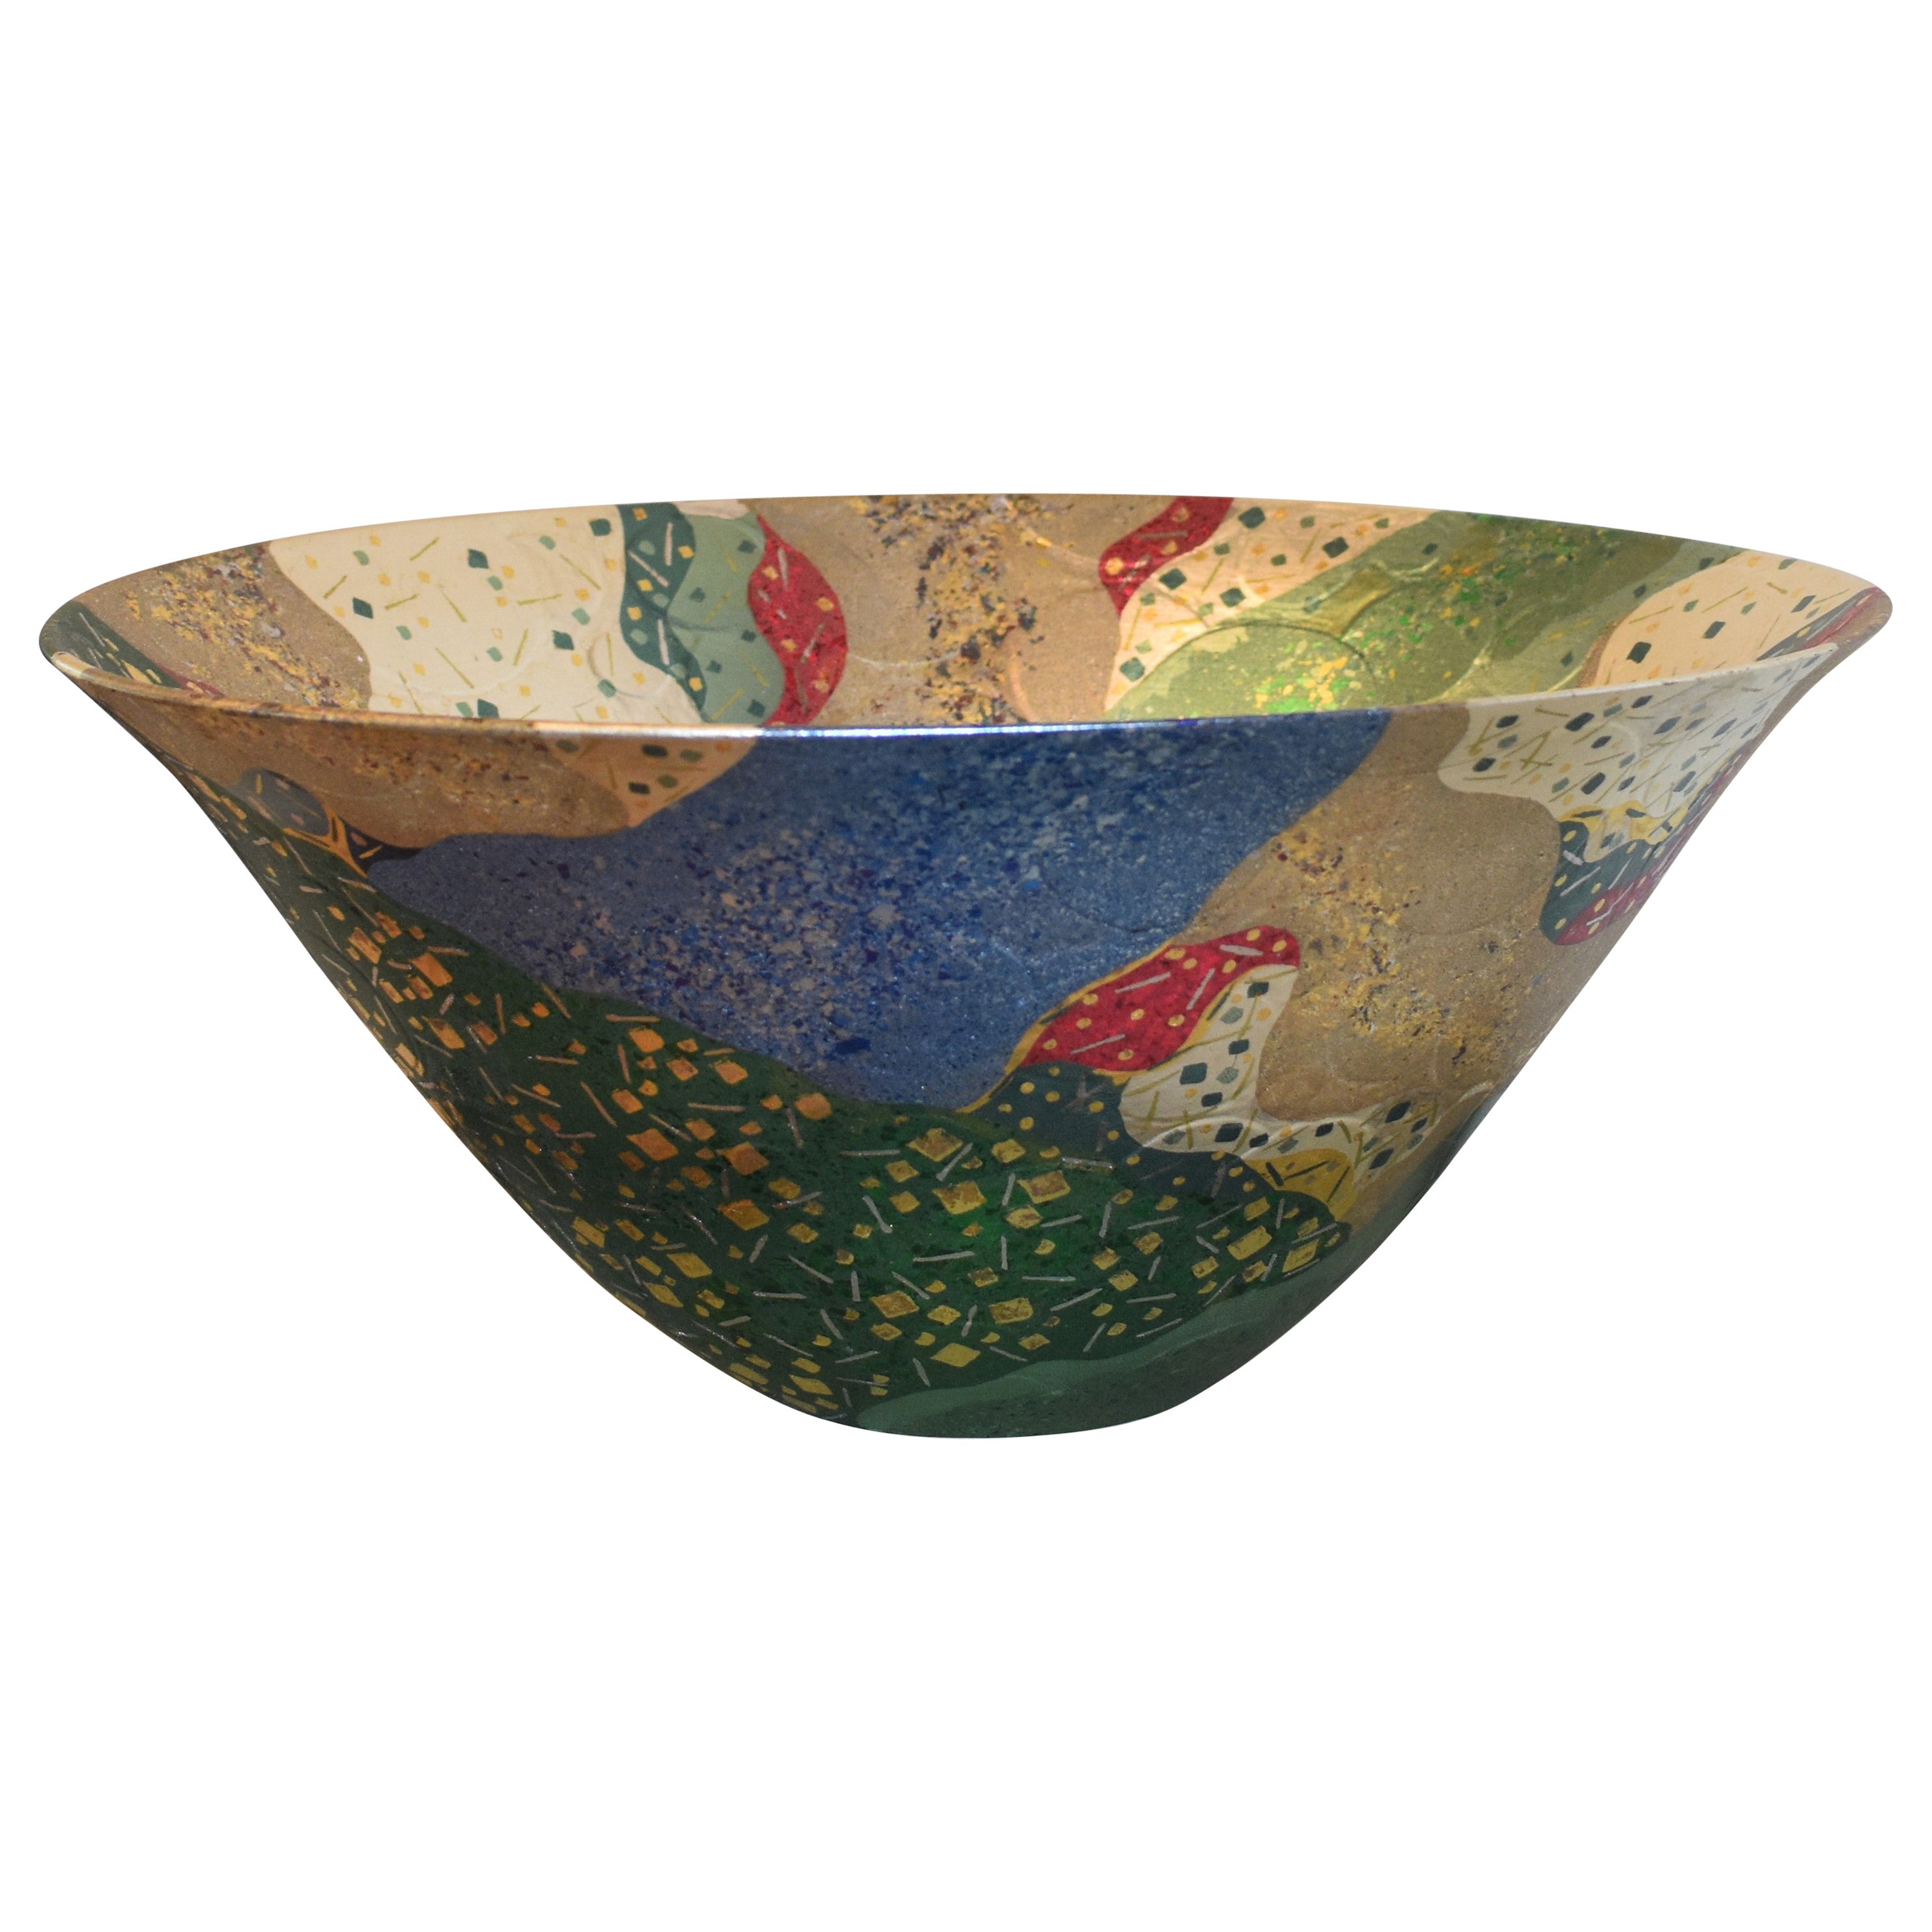 Japanische Porzellanvase aus Gold, Platin und blau-grünem Porzellan des zeitgenössischen Künstlers